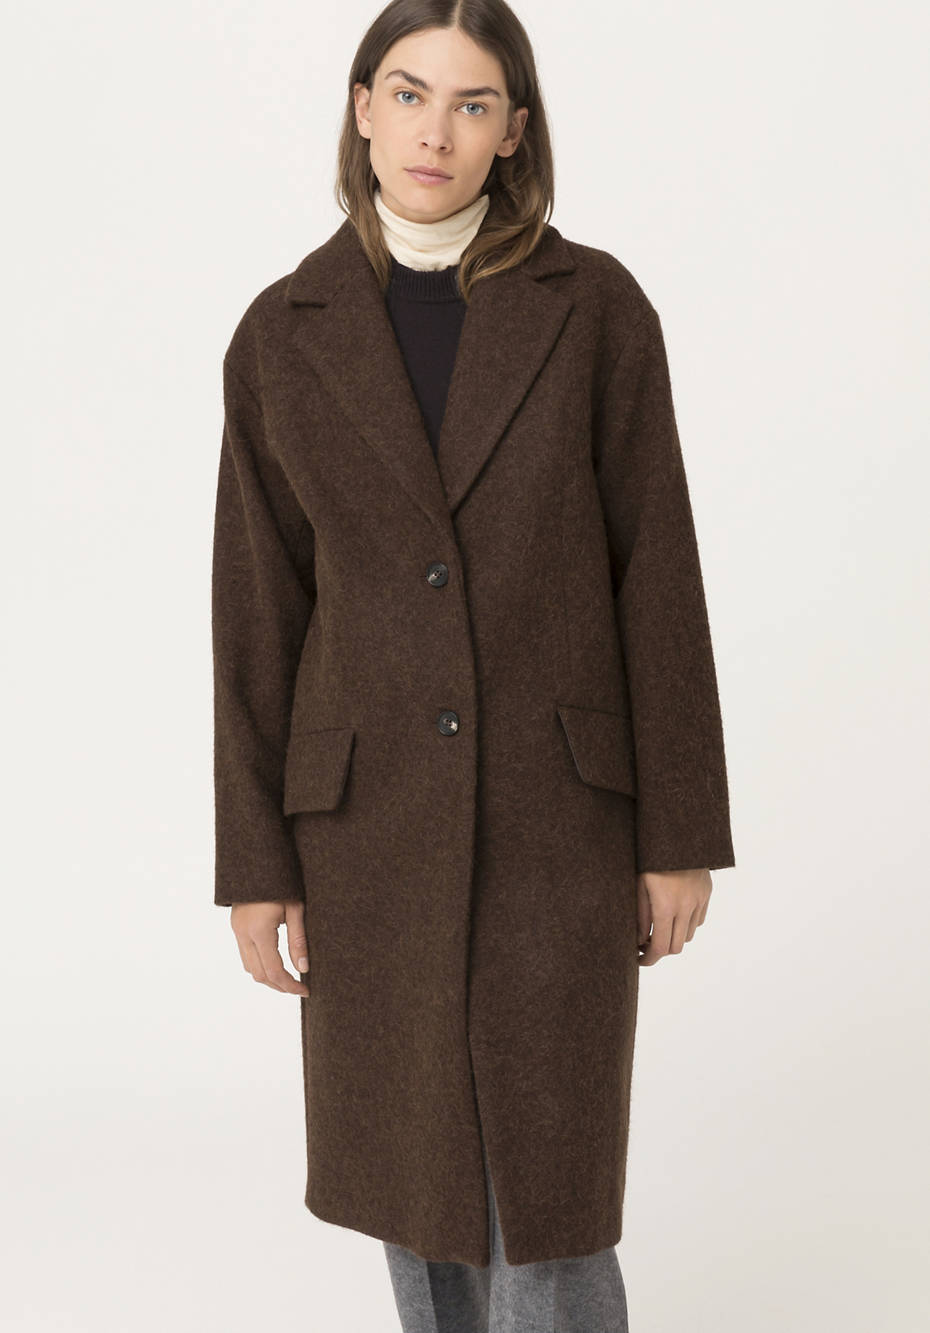 Alpaca coat with virgin wool